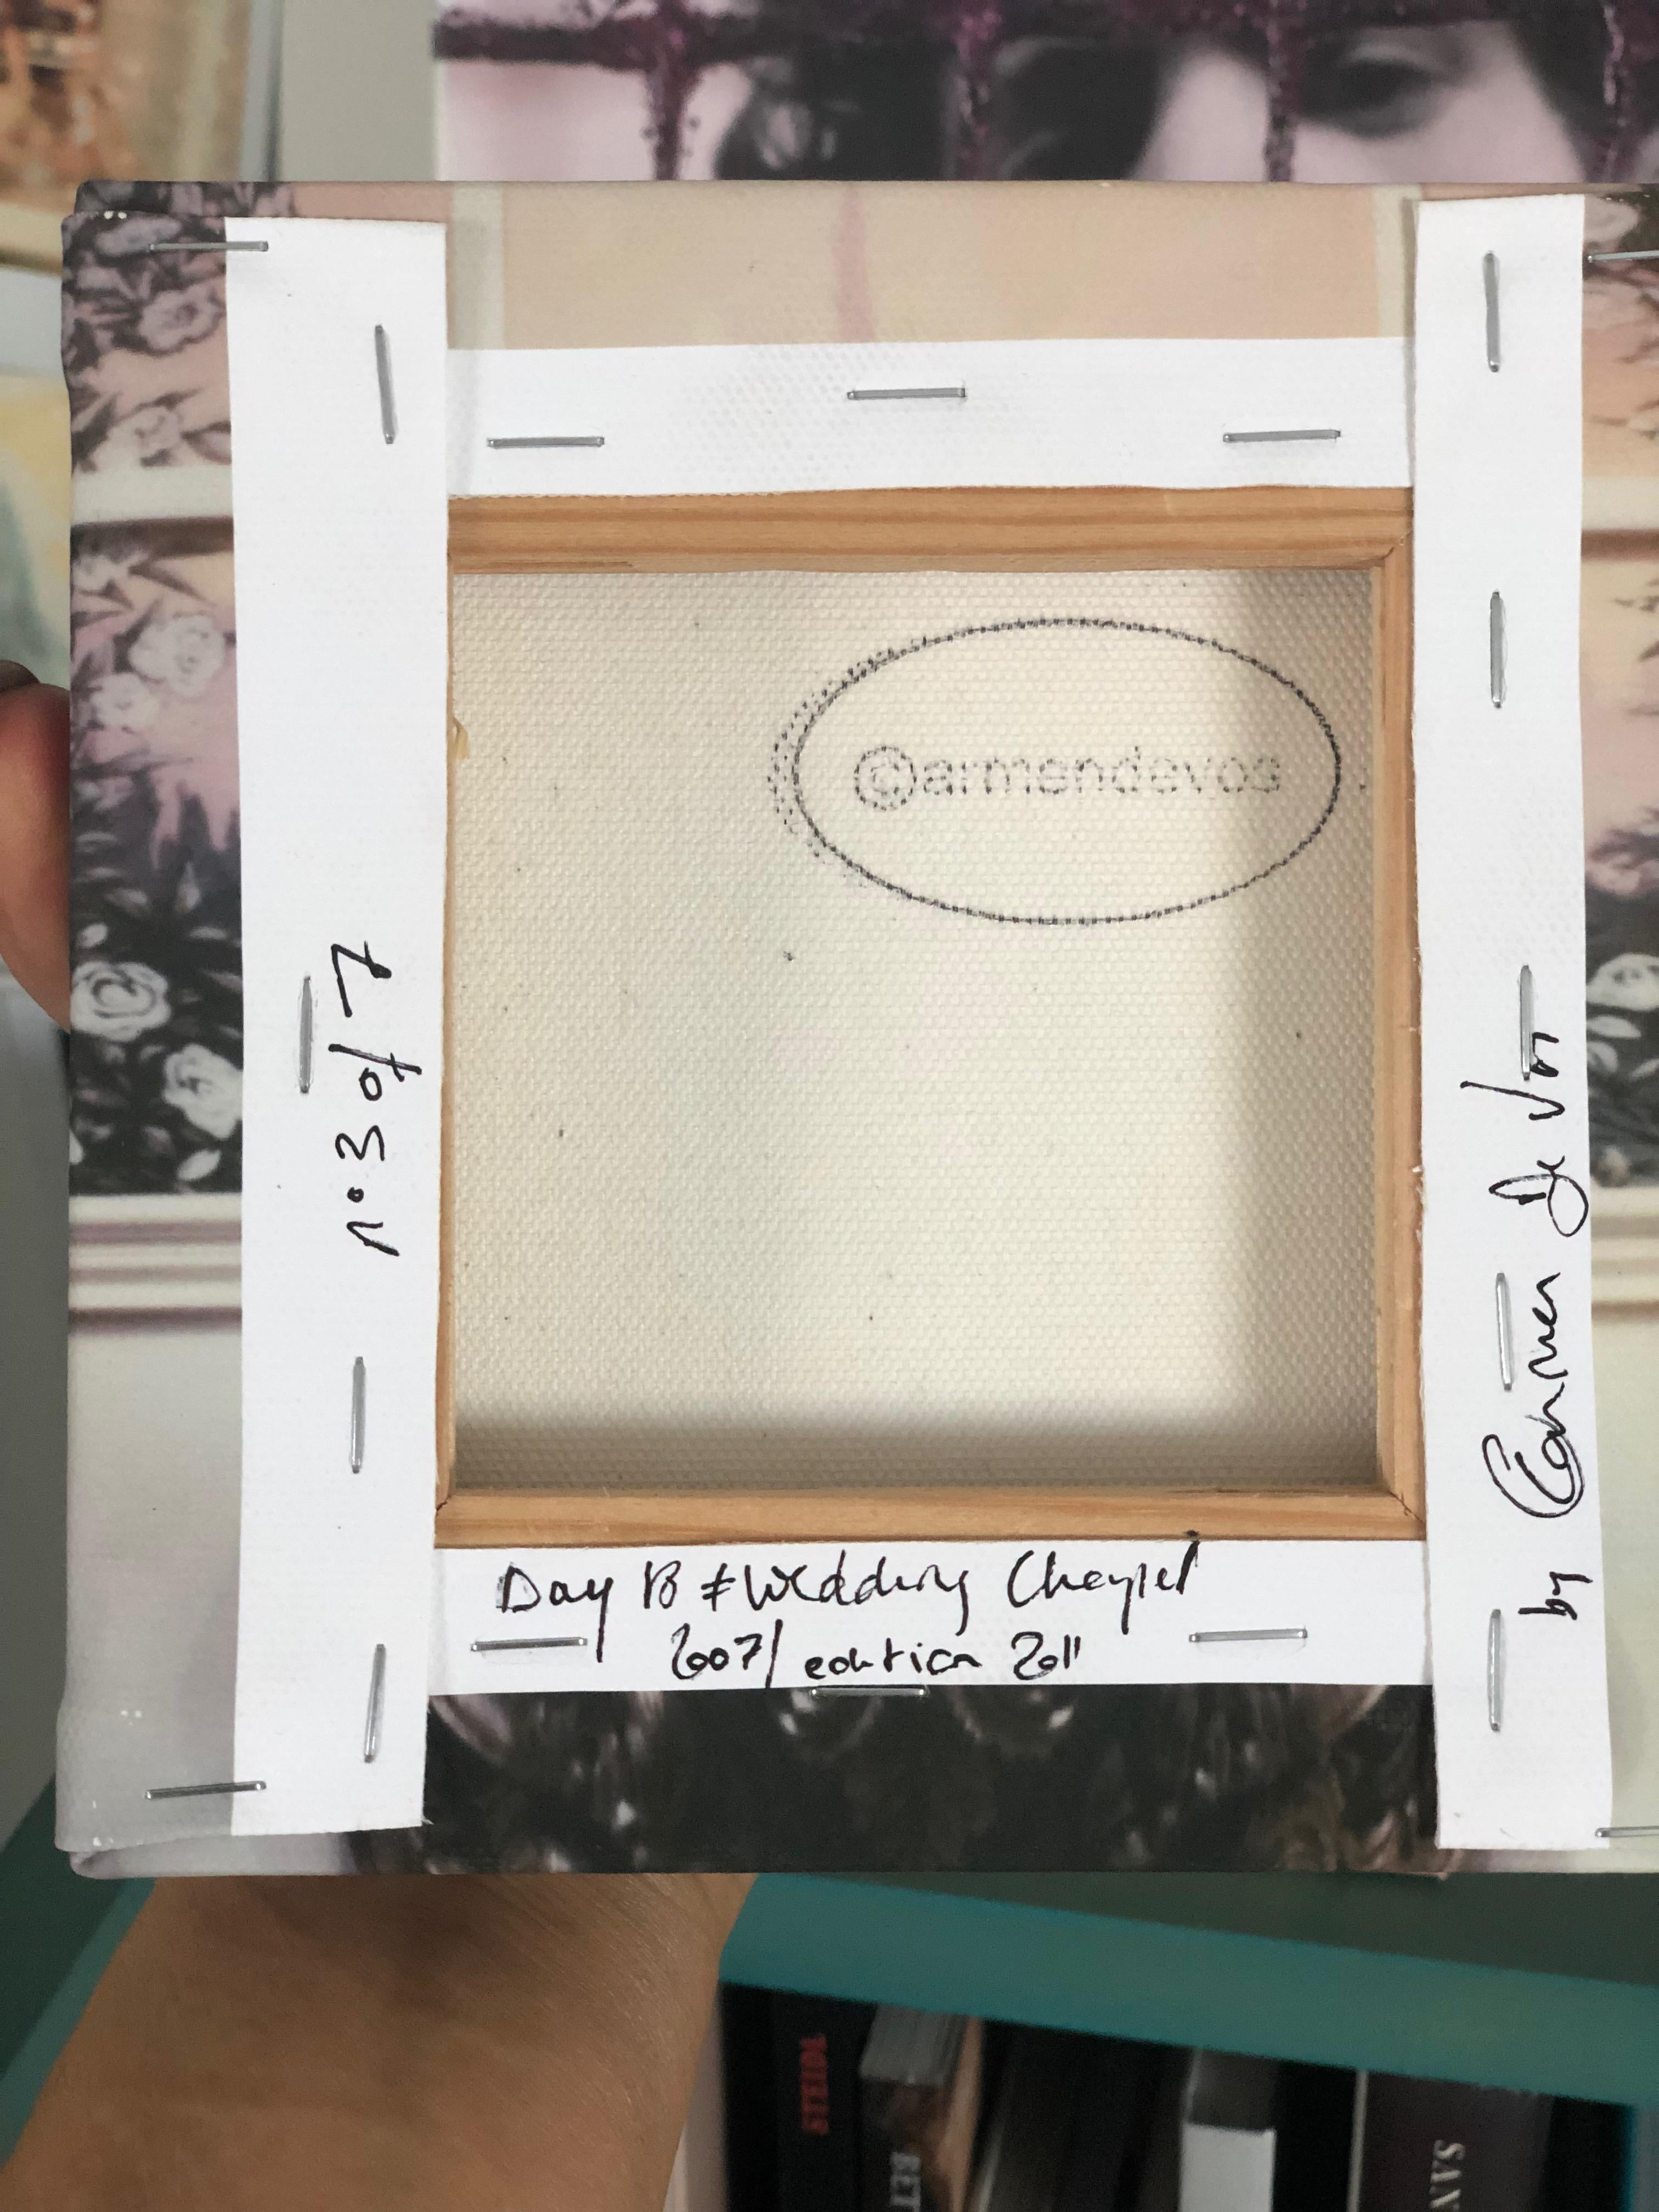 TAG 18 - HOCHZEITSKAPELLE 
aus der Serie US Road Trip Diary 2007, 15x15cm
Archivalischer Pigmentdruck auf Leinwand, Foto nach einem abgelaufenen Polaroid
Montiert auf einen 2 cm hohen Holzrahmen
Handsigniert, gestempelt & nummeriert vom